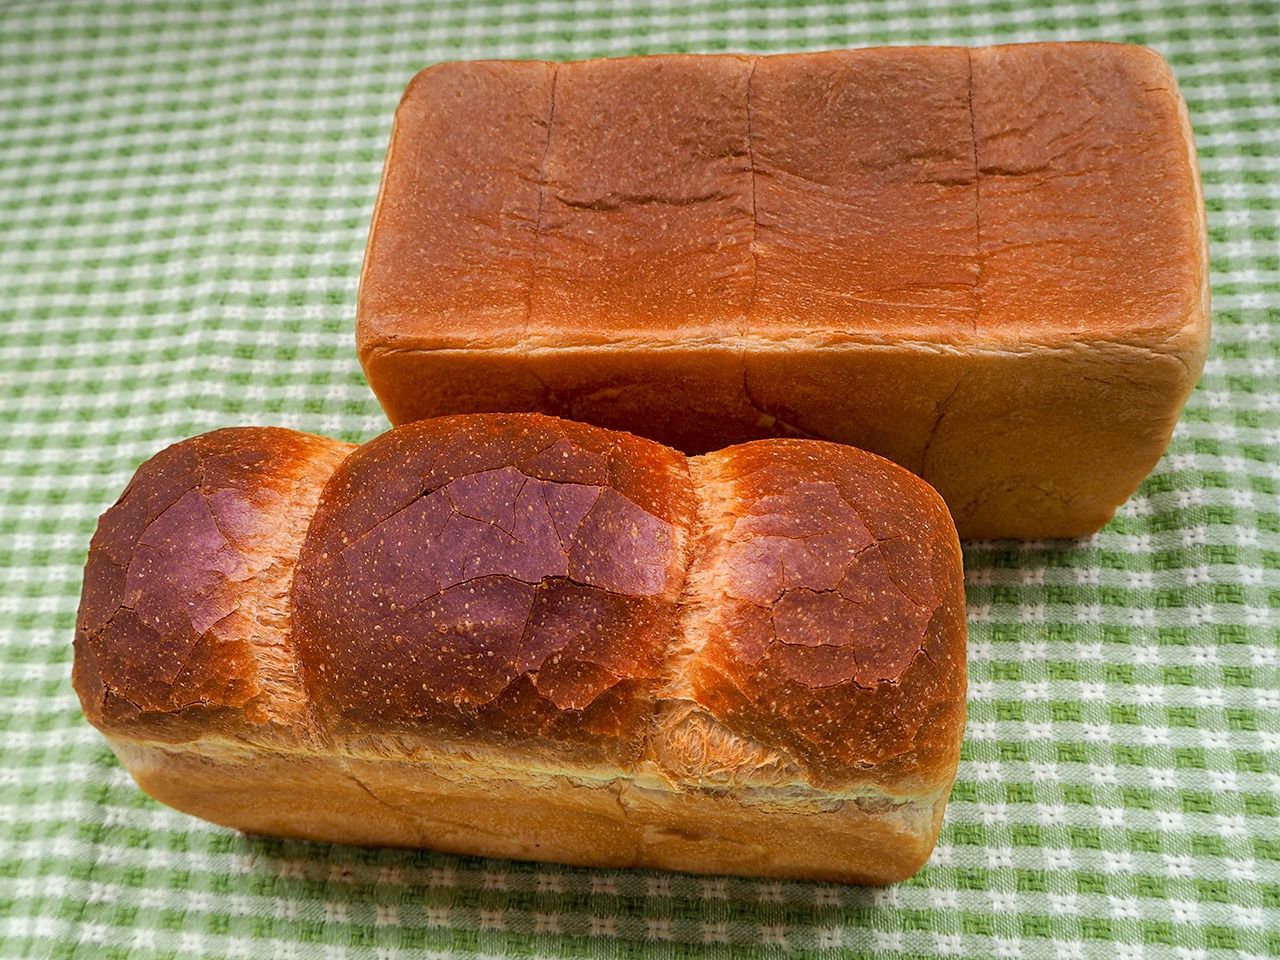 东京银座的吐司专卖店“CENTRE THE BAKERY”出售的方形吐司和英式面包